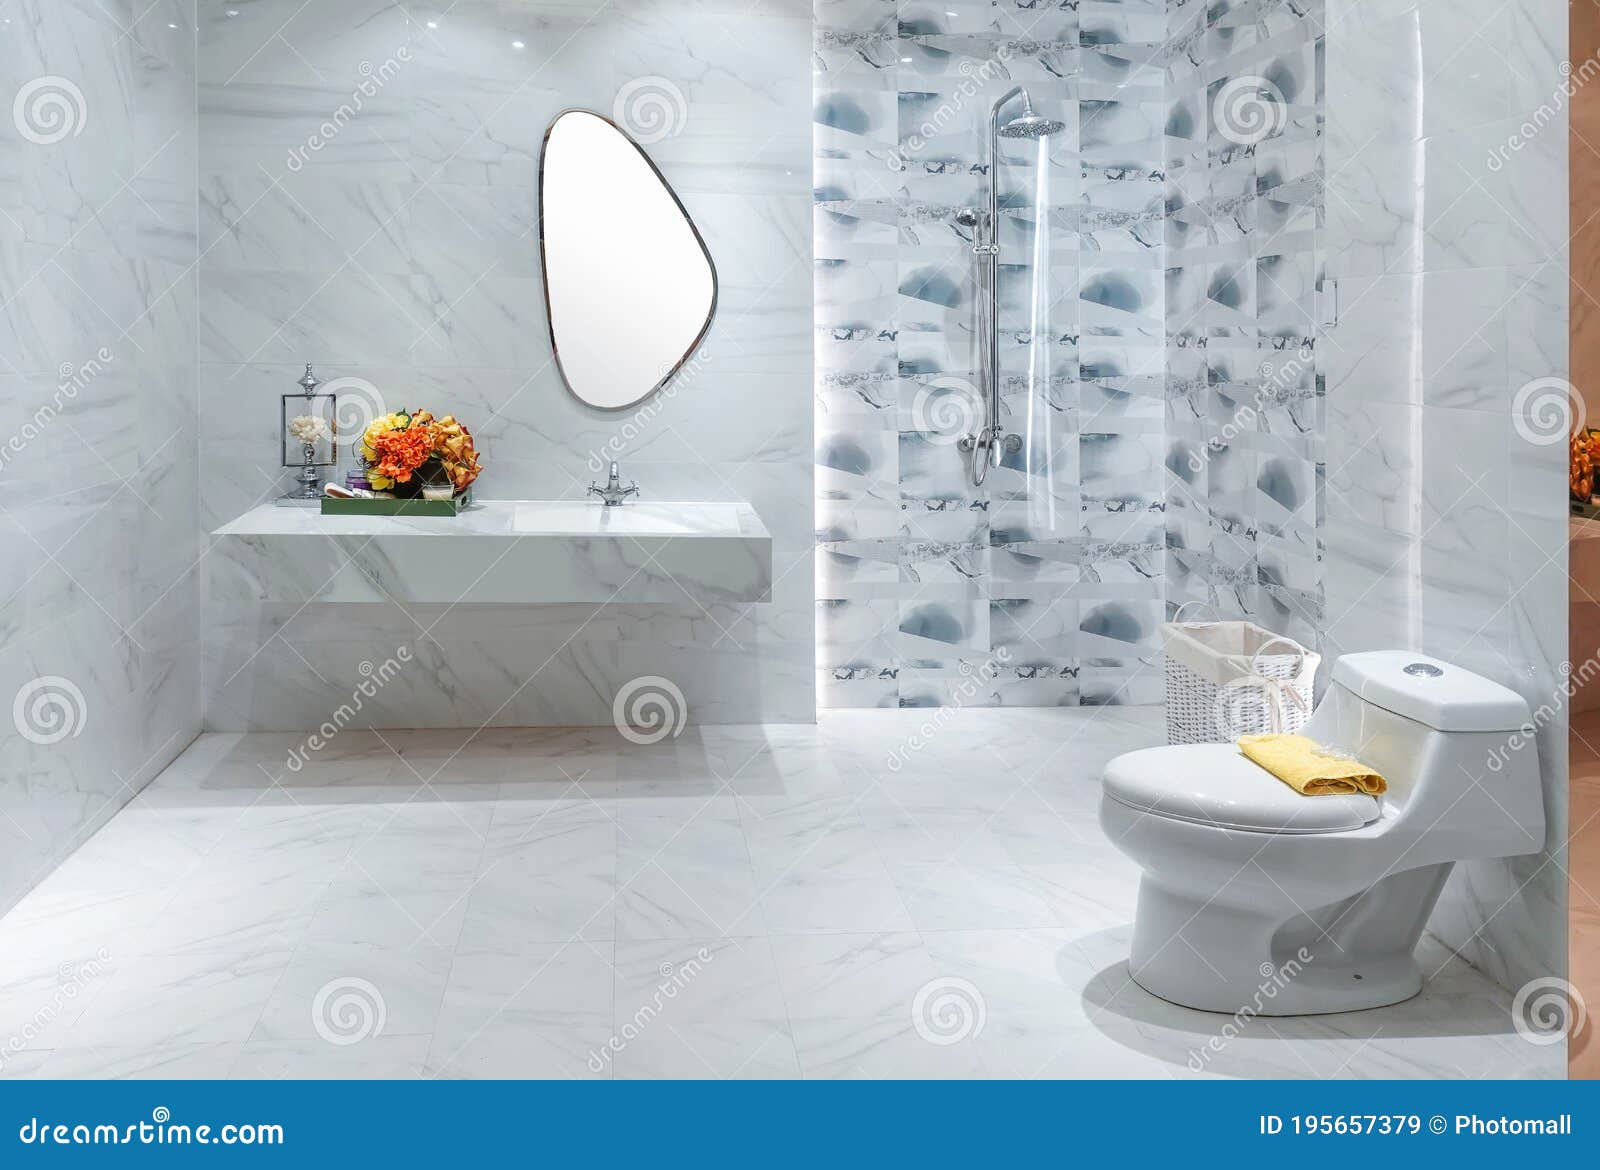 Phòng tắm với phòng tắm với không gian tắm riêng sang trọng và đẳng cấp sẽ khiến bạn cảm thấy thư giãn và tận hưởng những giây phút riêng tư của mình. Bạn sẽ được tận hưởng không gian sang trọng với thiết kế hiện đại và trang thiết bị cao cấp.